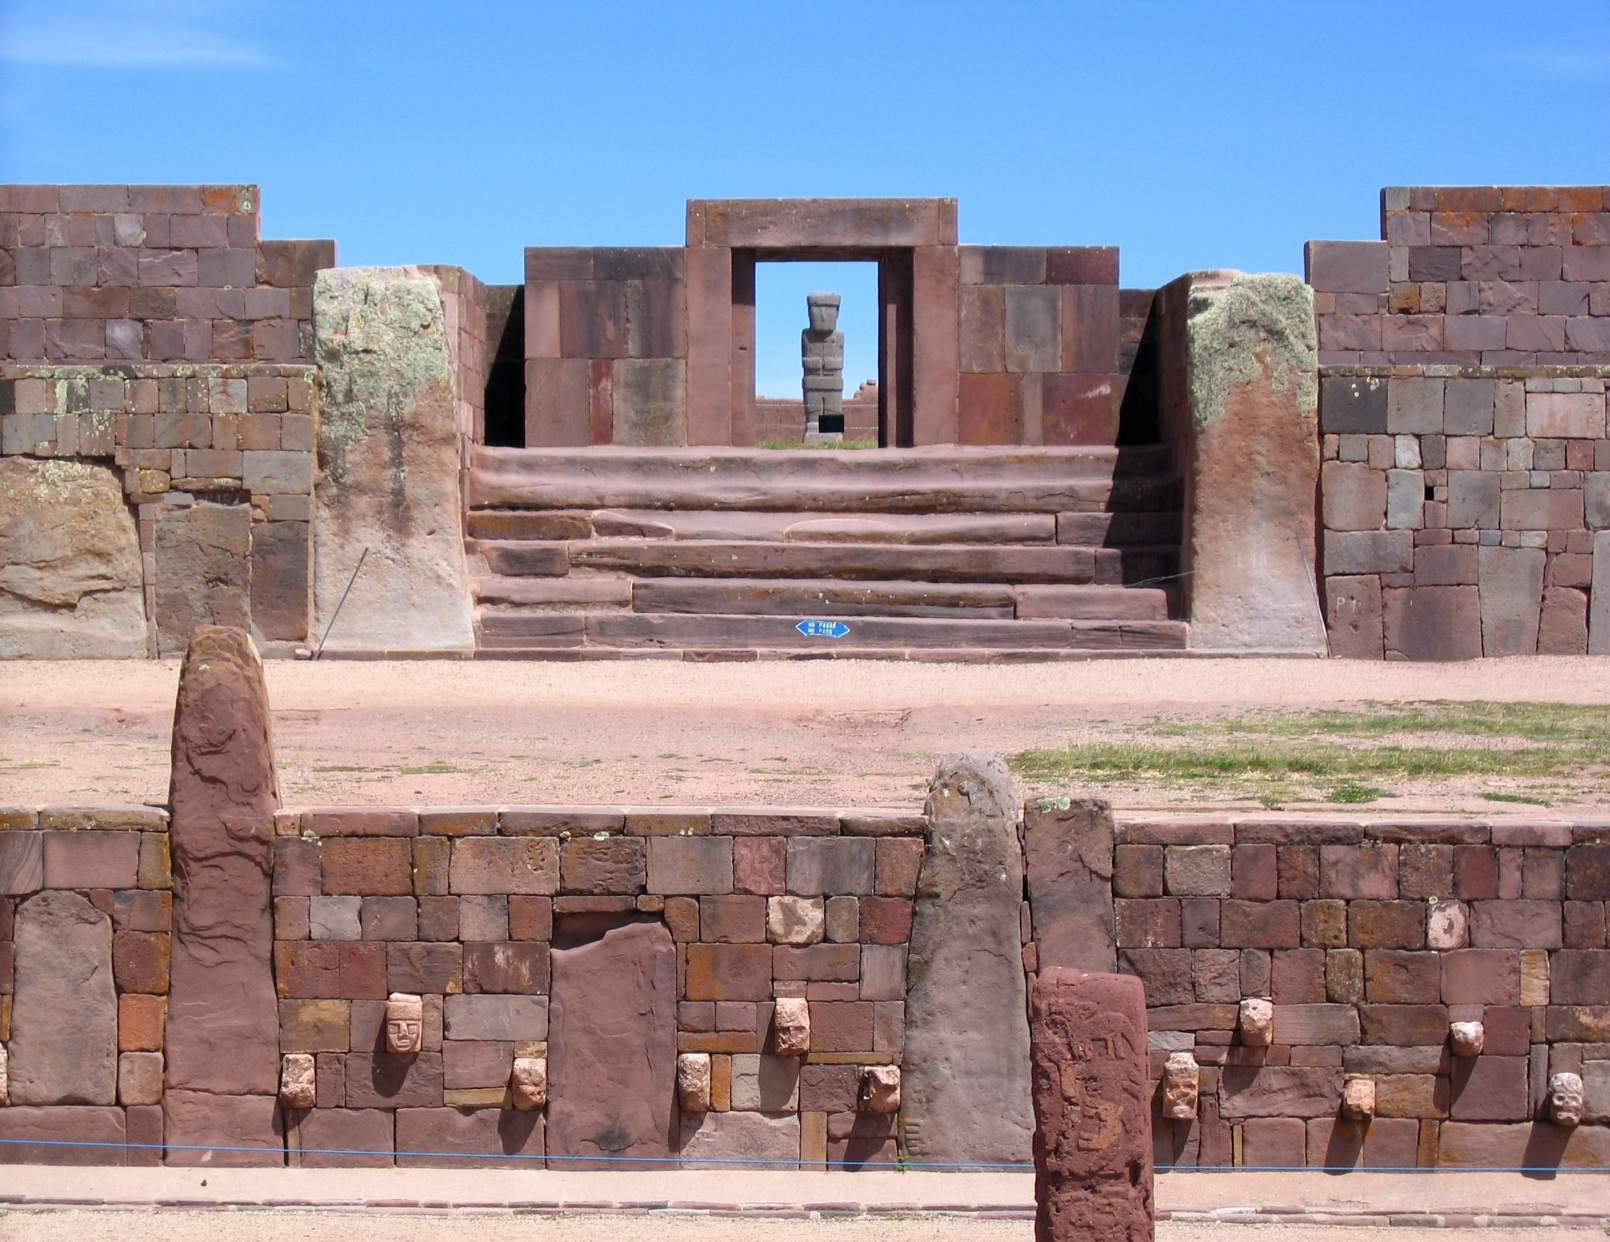 Ruševine Tiwanaku: predinkovske Kalasasaye in spodnji templji. Tipičen pogled na ikono, pri čemer je Ponce Monolith poravnan z glavnimi vrati templja Kalasasaya. Ob enakonočjih sonce sije v monolit Ponce. © Avtorstvo slike: Xenomanes | Licencirano od DreamsTime.com (Založniška fotografija za uredniško/komercialno uporabo, ID: 28395032)